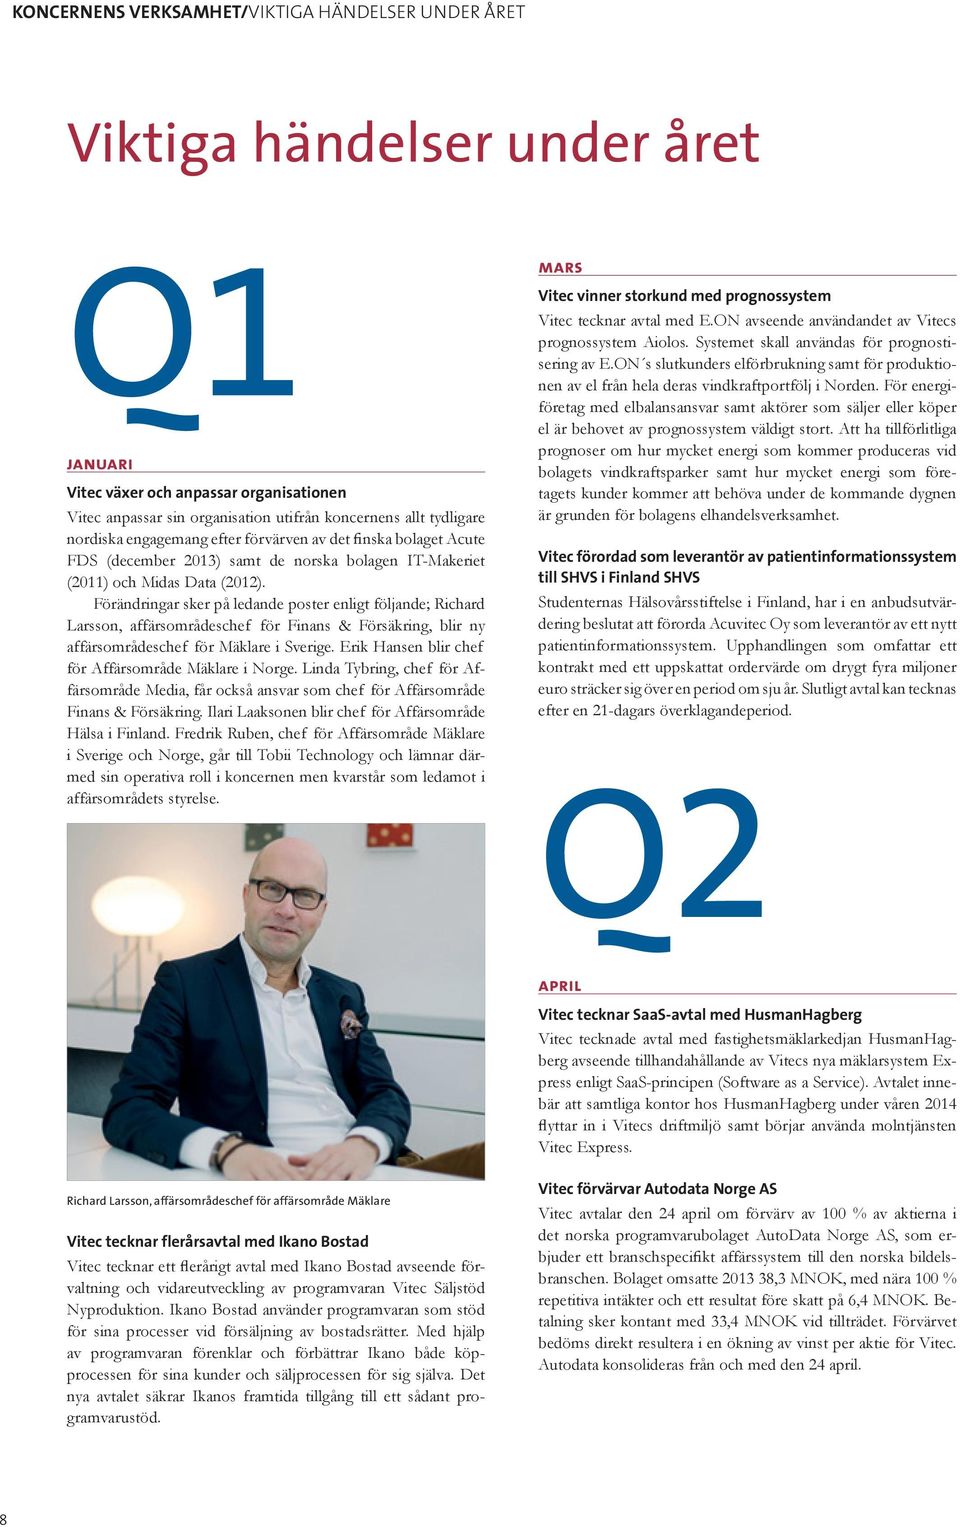 Förändringar sker på ledande poster enligt följande; Richard Larsson, affärsområdeschef för Finans & Försäkring, blir ny affärsområdeschef för Mäklare i Sverige.